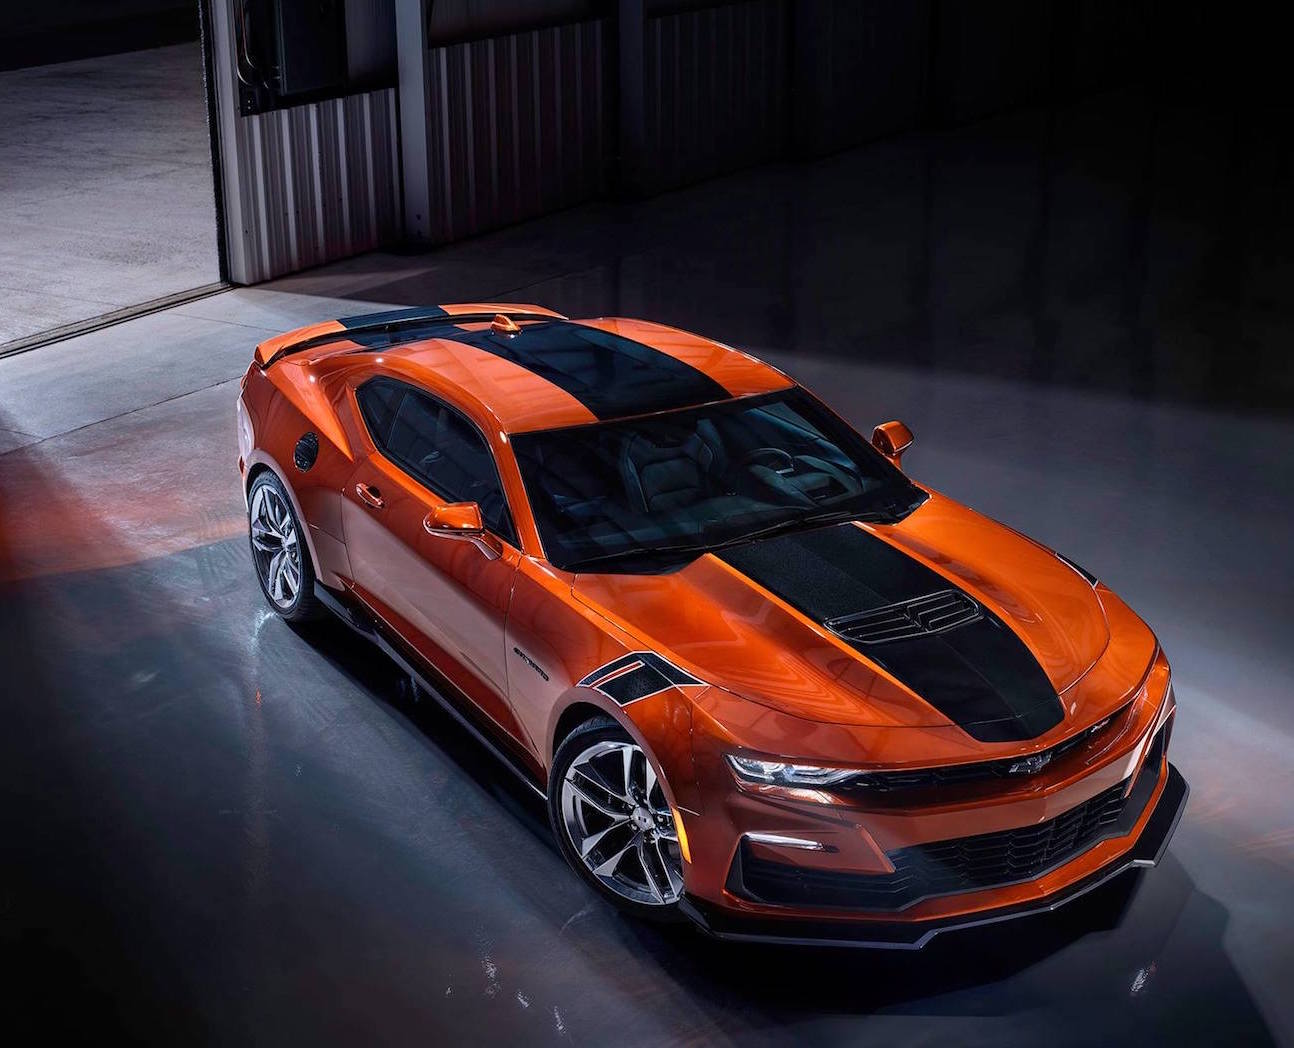 2022 Chevy Camaro in new Vivid Orange color